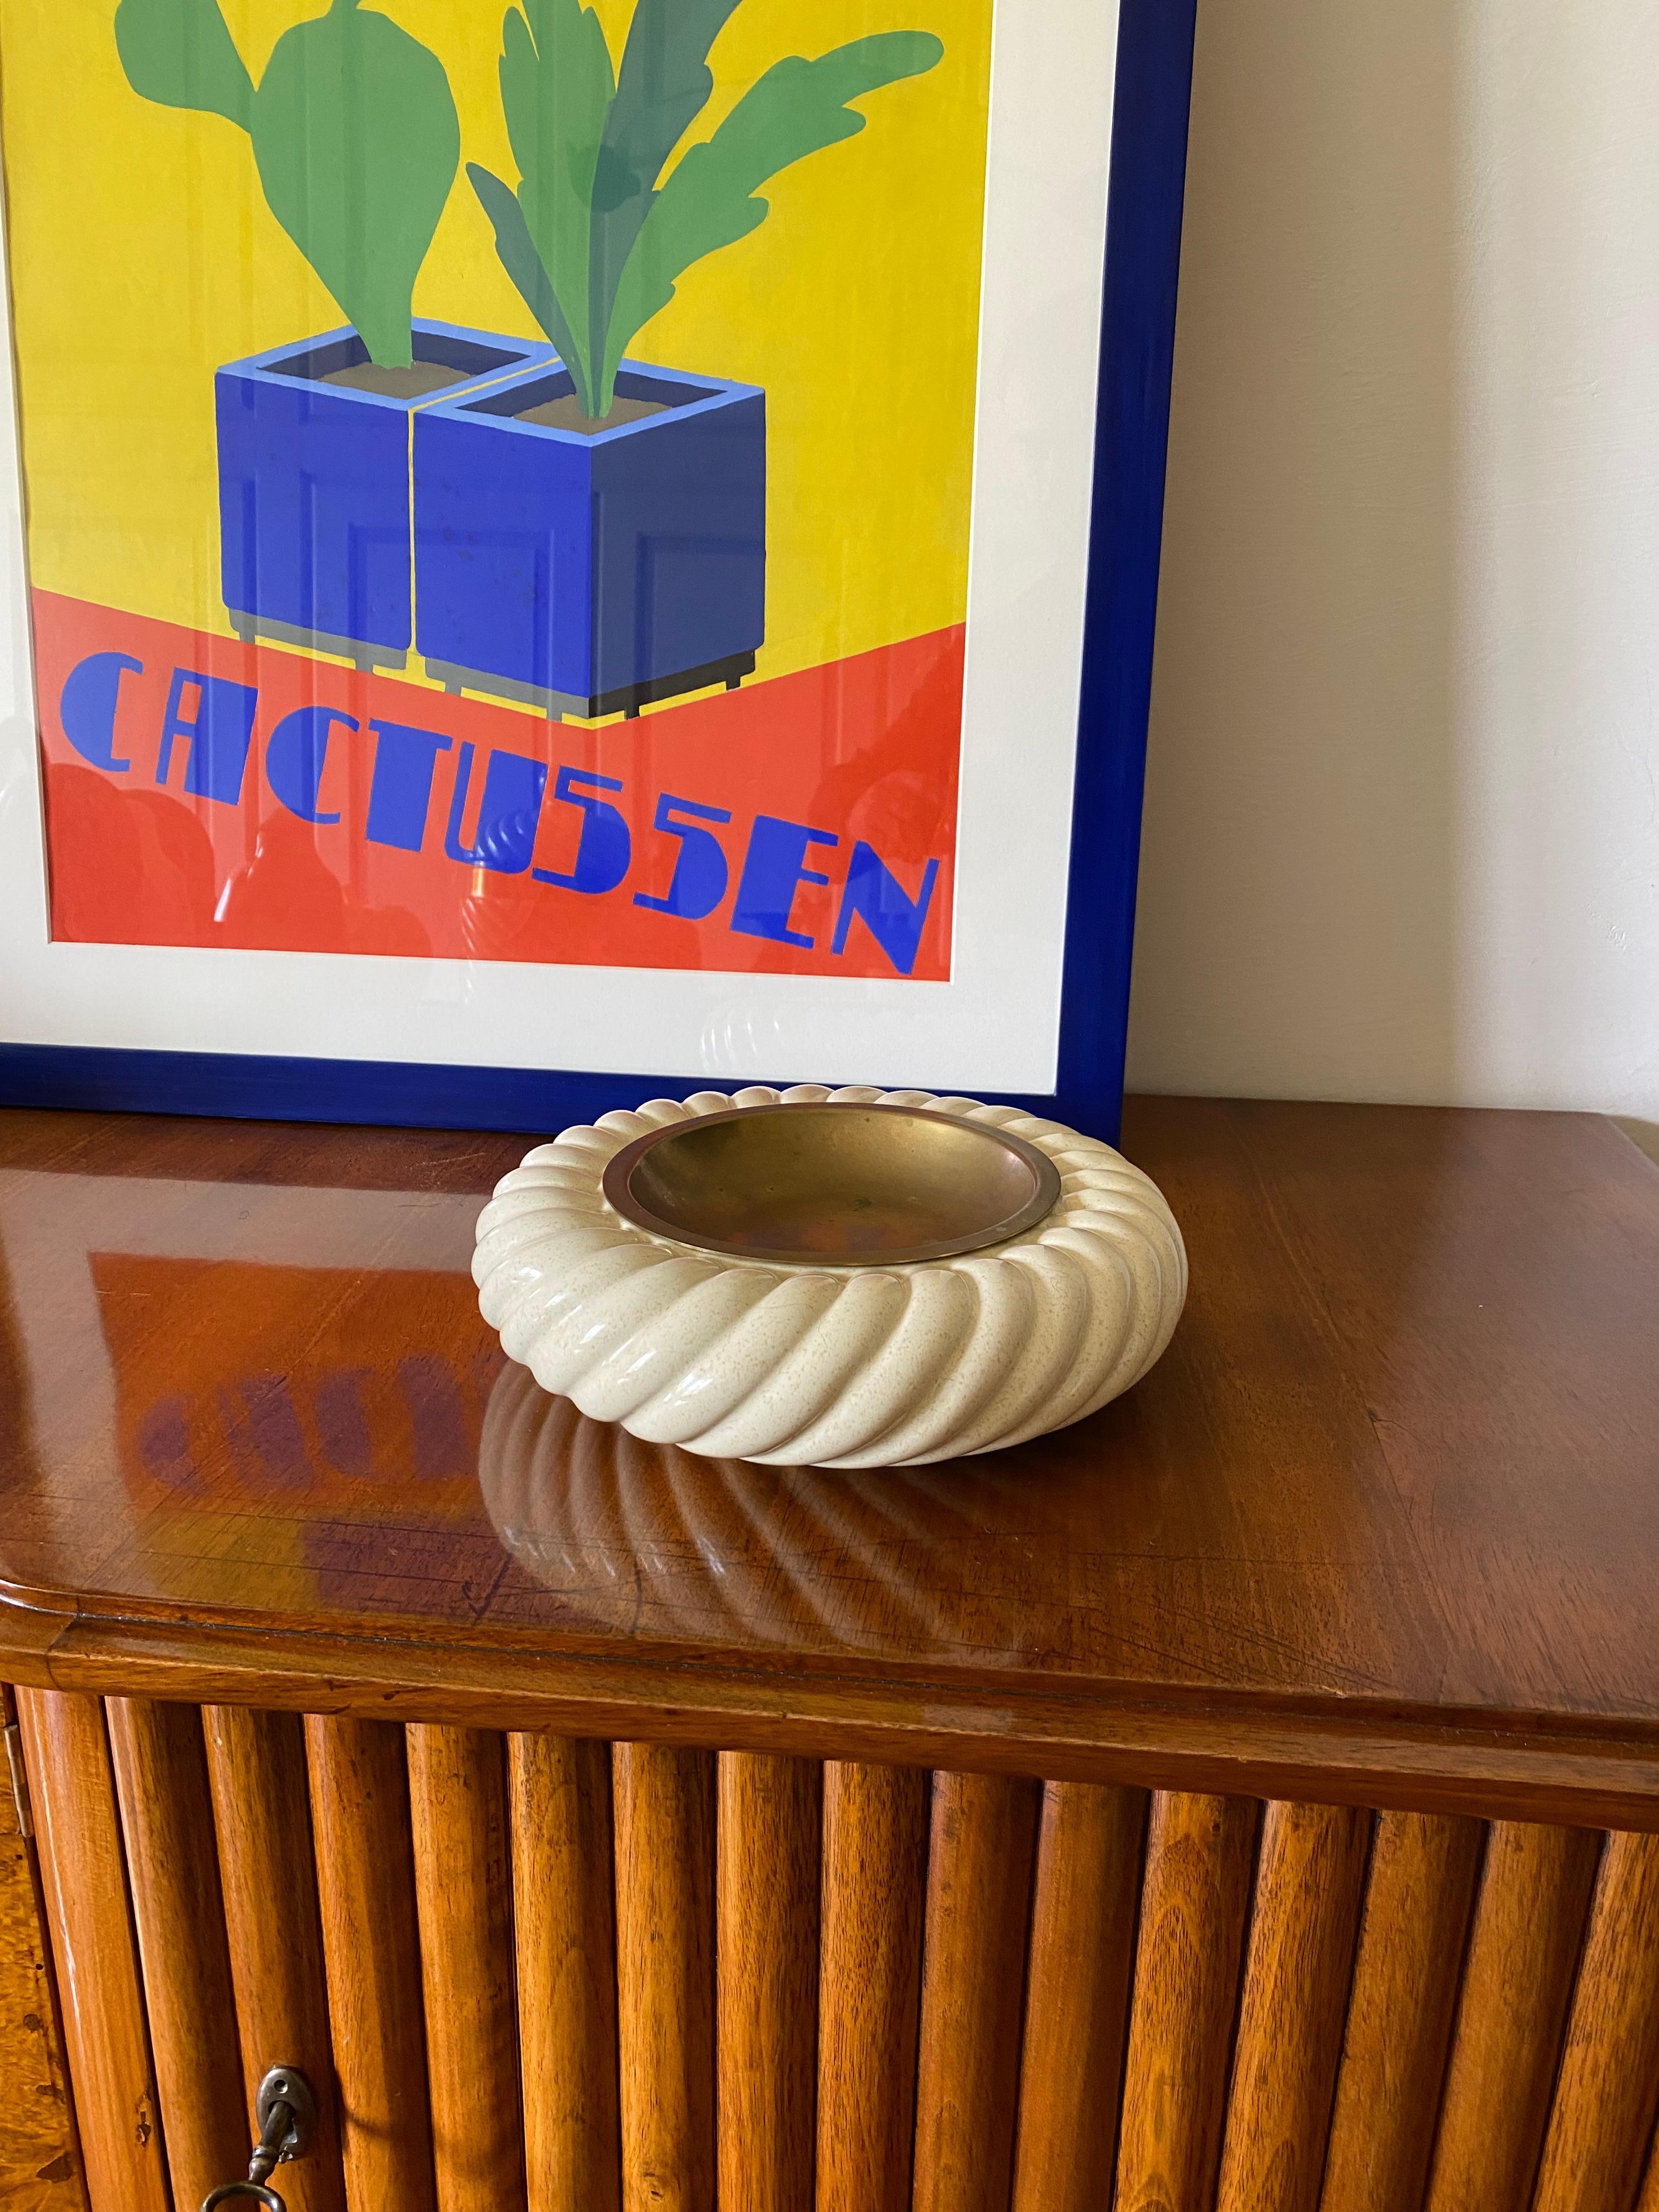 Cremefarbener Keramik-Aschenbecher / vide poche entworfen von Tommaso Barbi

hergestellt von B Ceramiche, Italien 1970 ca.

Messing, Keramik

25 x 25 x 7 cm

Signiert und markiert auf der Unterseite

Condit: gut im Einklang mit Alter und Gebrauch,